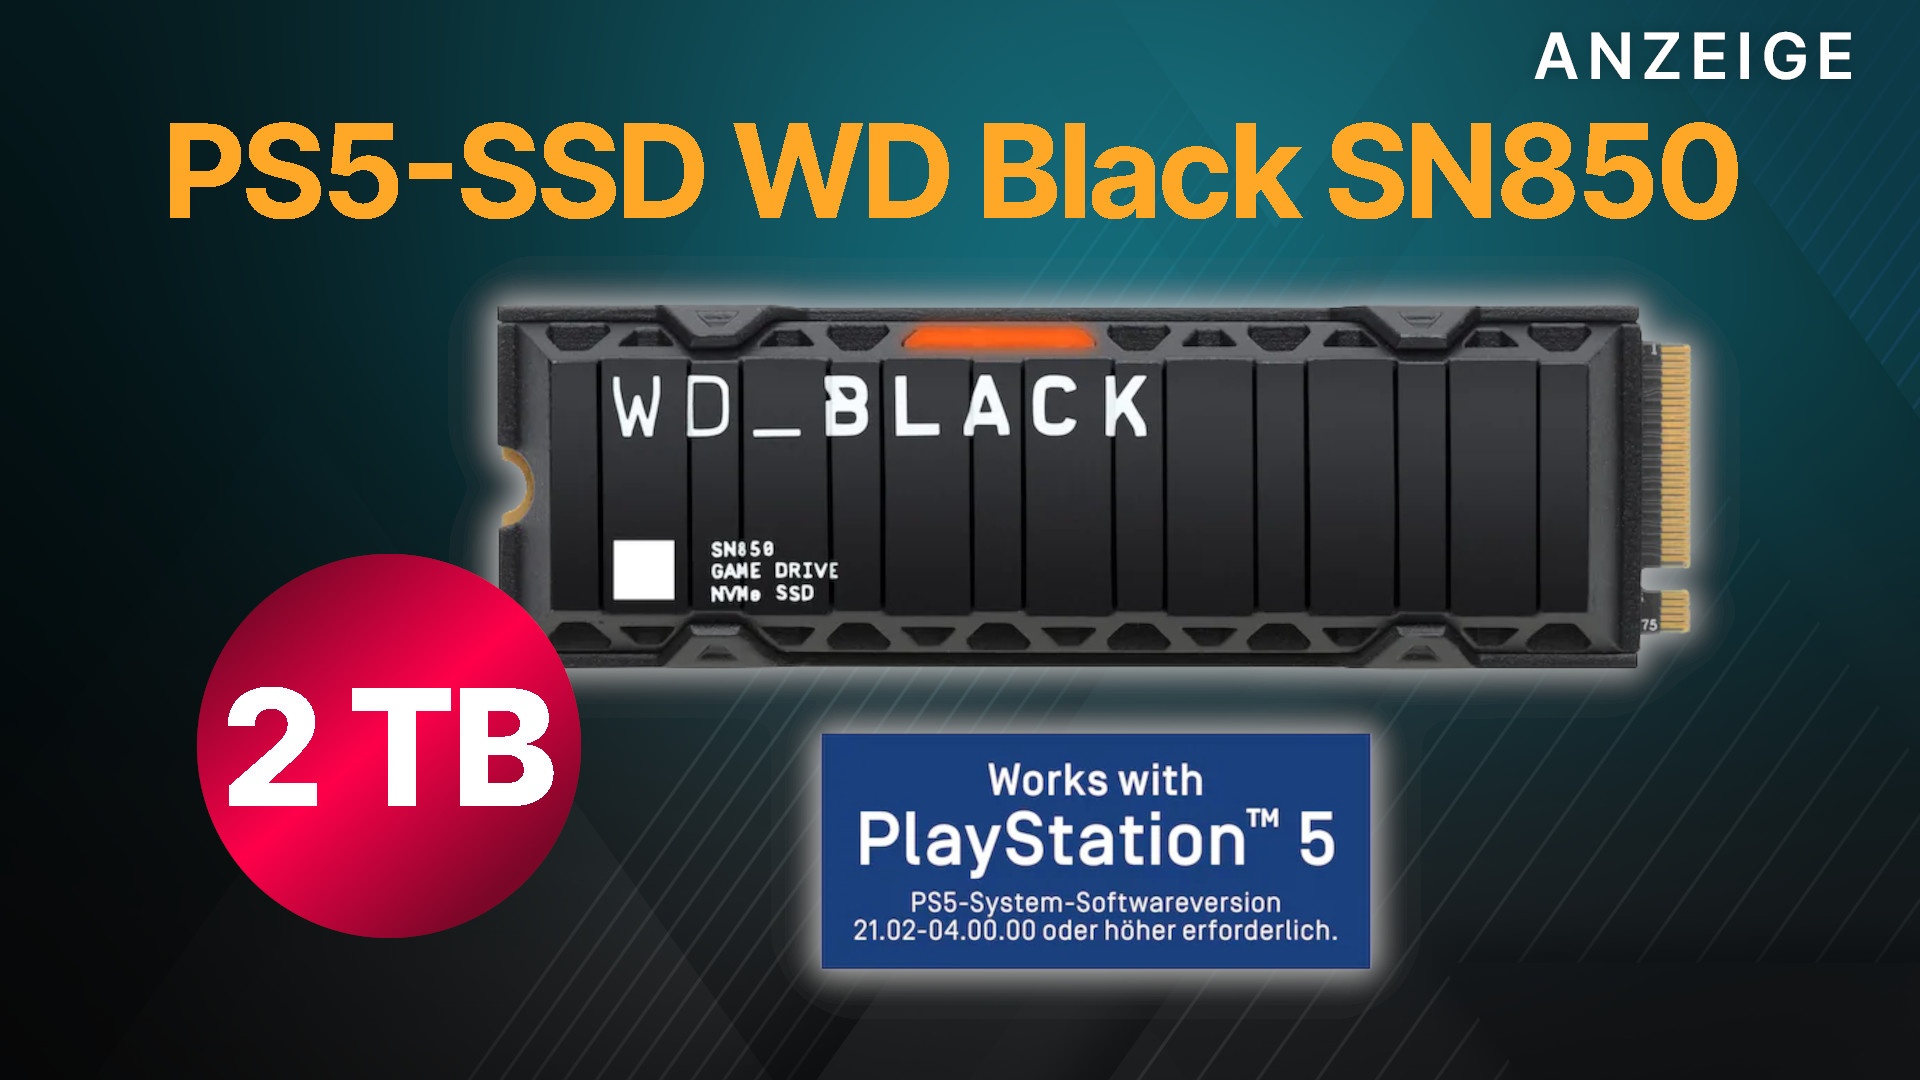 SSD WD Black SN850: Holt euch jetzt günstig 2 TB Speicher für eure PS5